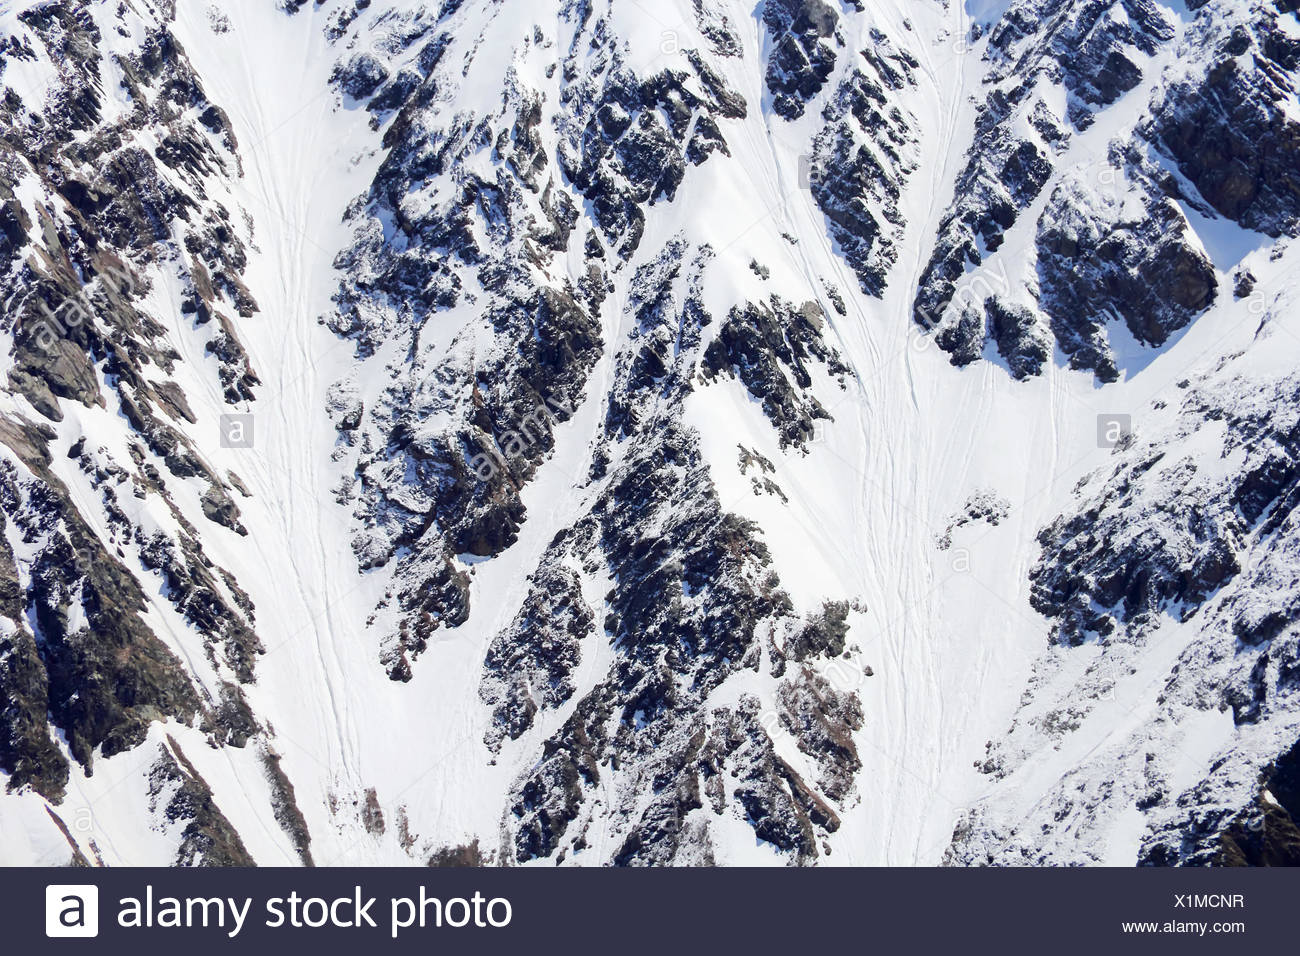 Snow Mountains Texture Stock Photo Alamy